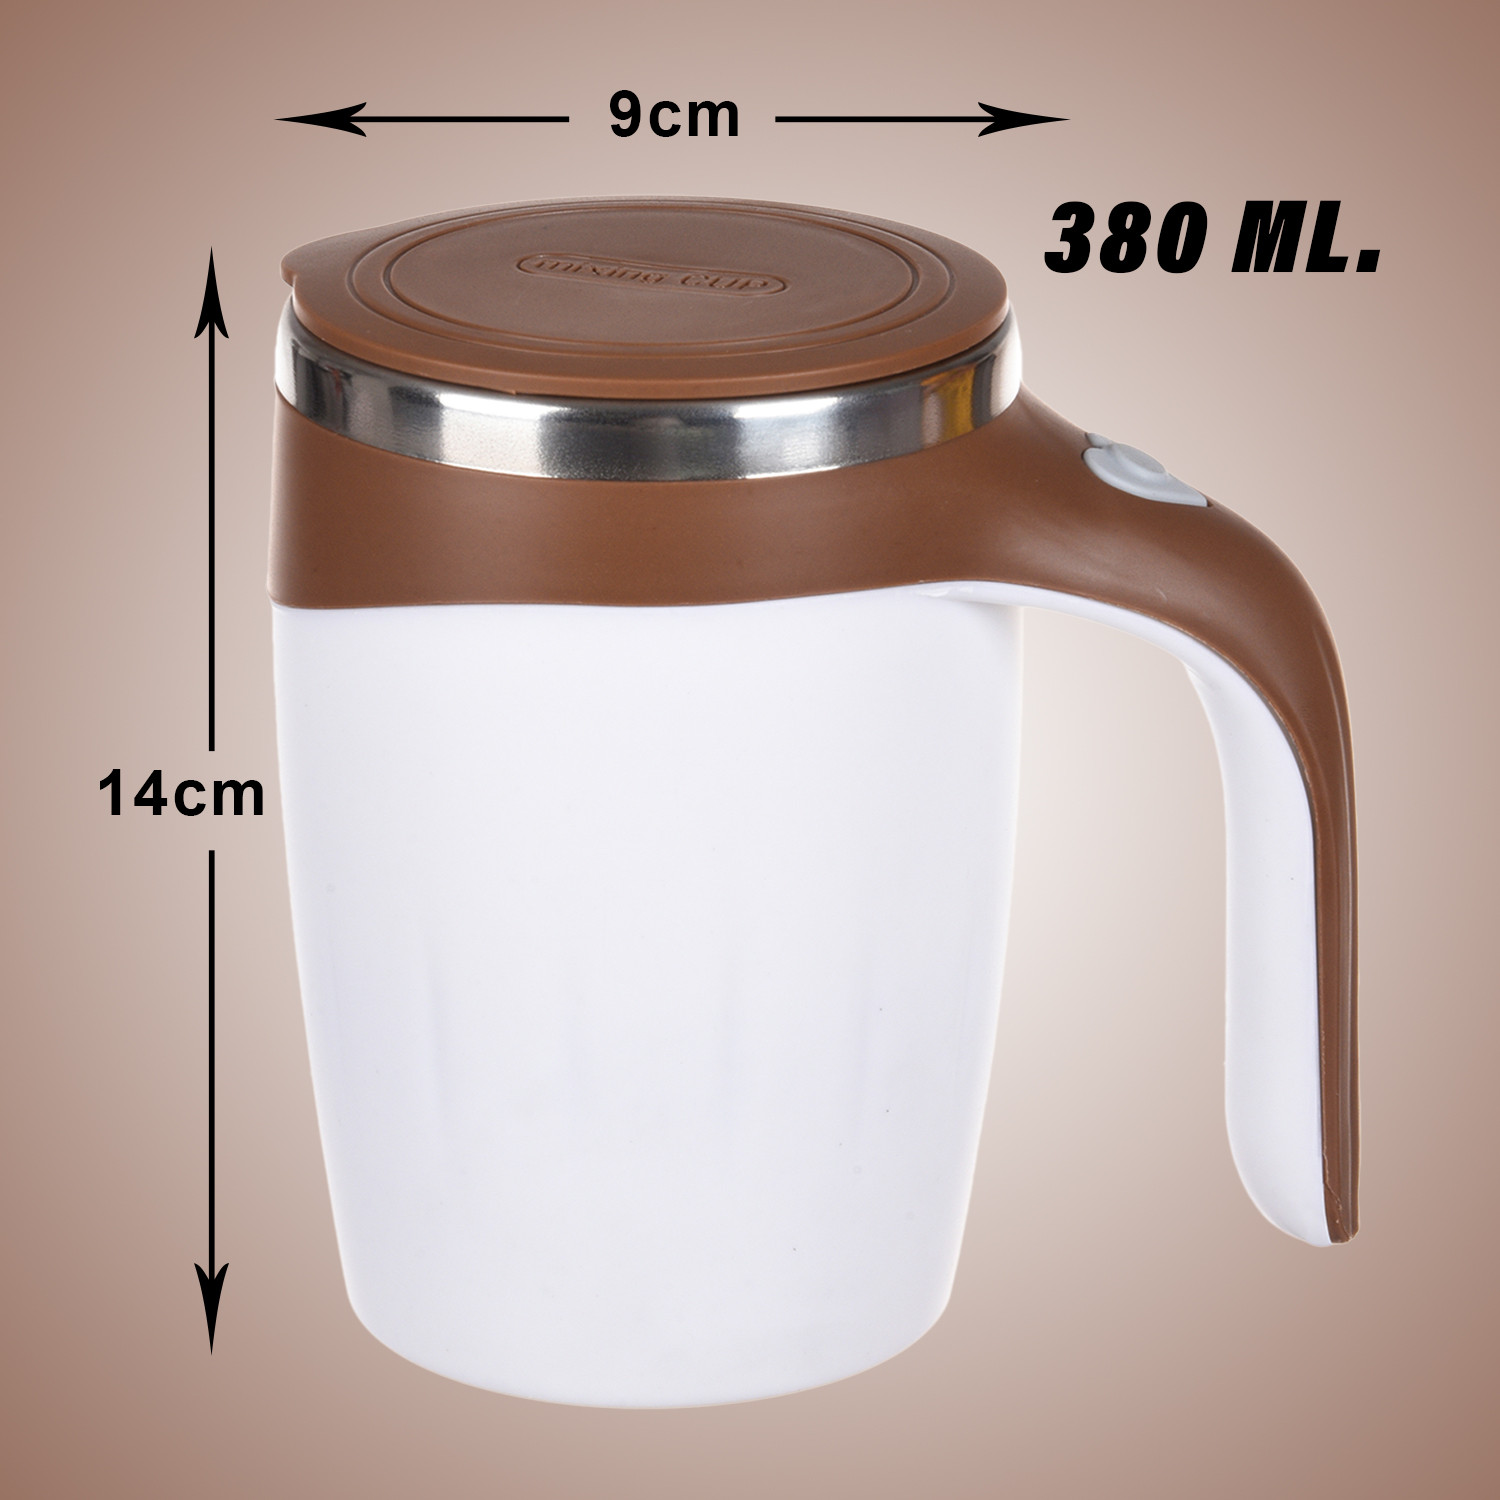 Kuber Industries Stirring Coffee Mug | Magnetic Stirring Coffee Cup | Stainless Steel Mug for Milk | Travel Mixing Cup | Self Stirring Coffee Mug | Battery Operated | 380 ML | Brown